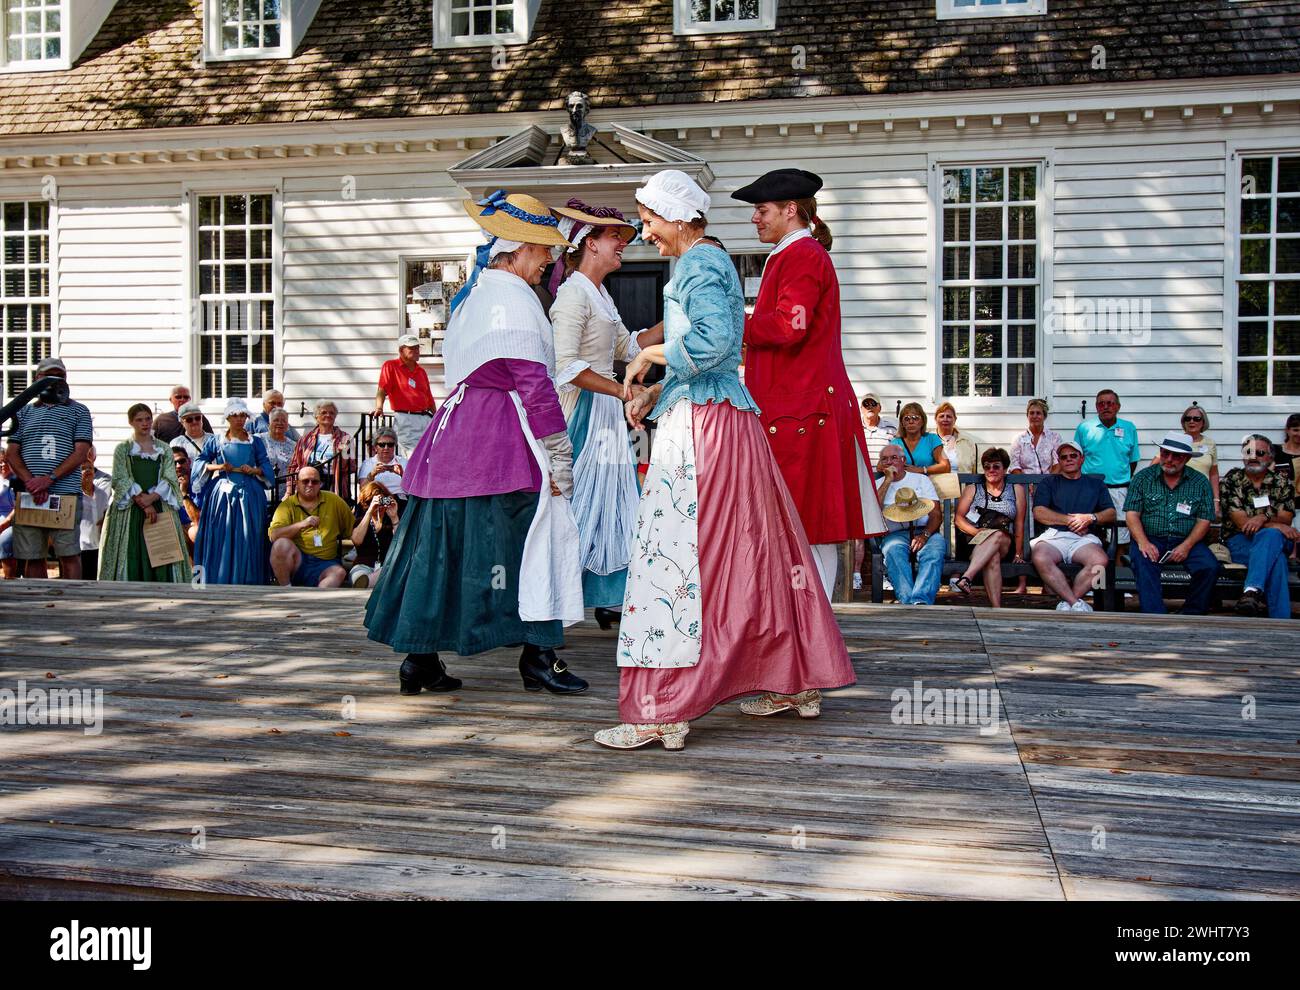 4 interprètes historiques dansant, vêtus de costumes d'époque, émouvant, heureux, manifestant, observant la foule, extérieur, été, Colonial Williamsburg, VI Banque D'Images